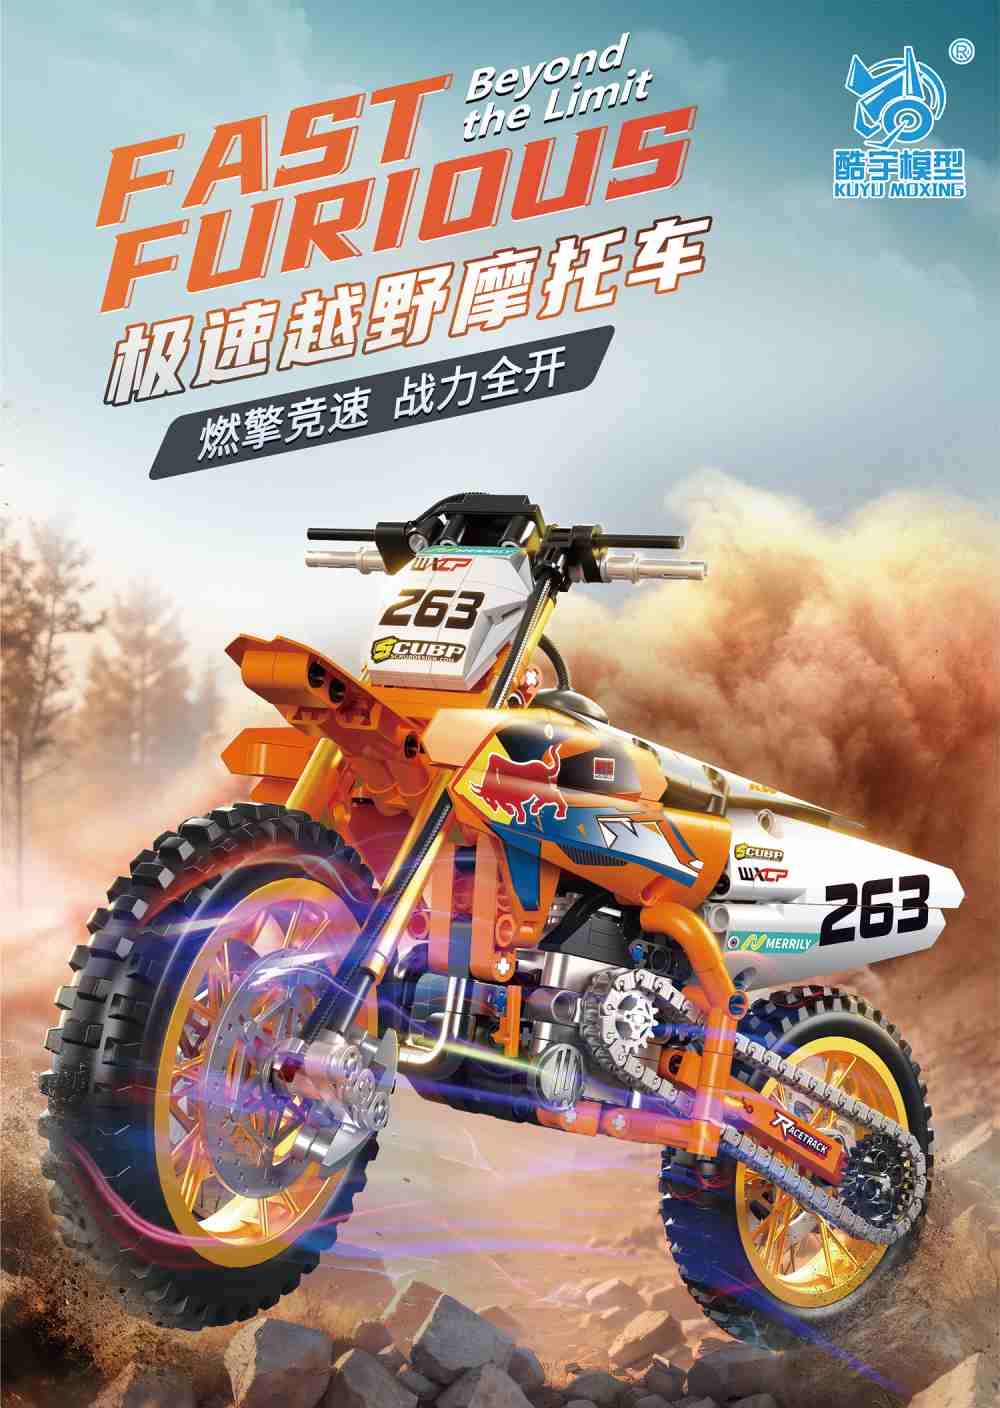 KUYU MOXING酷宇模型 7084 極速越野摩托車(益